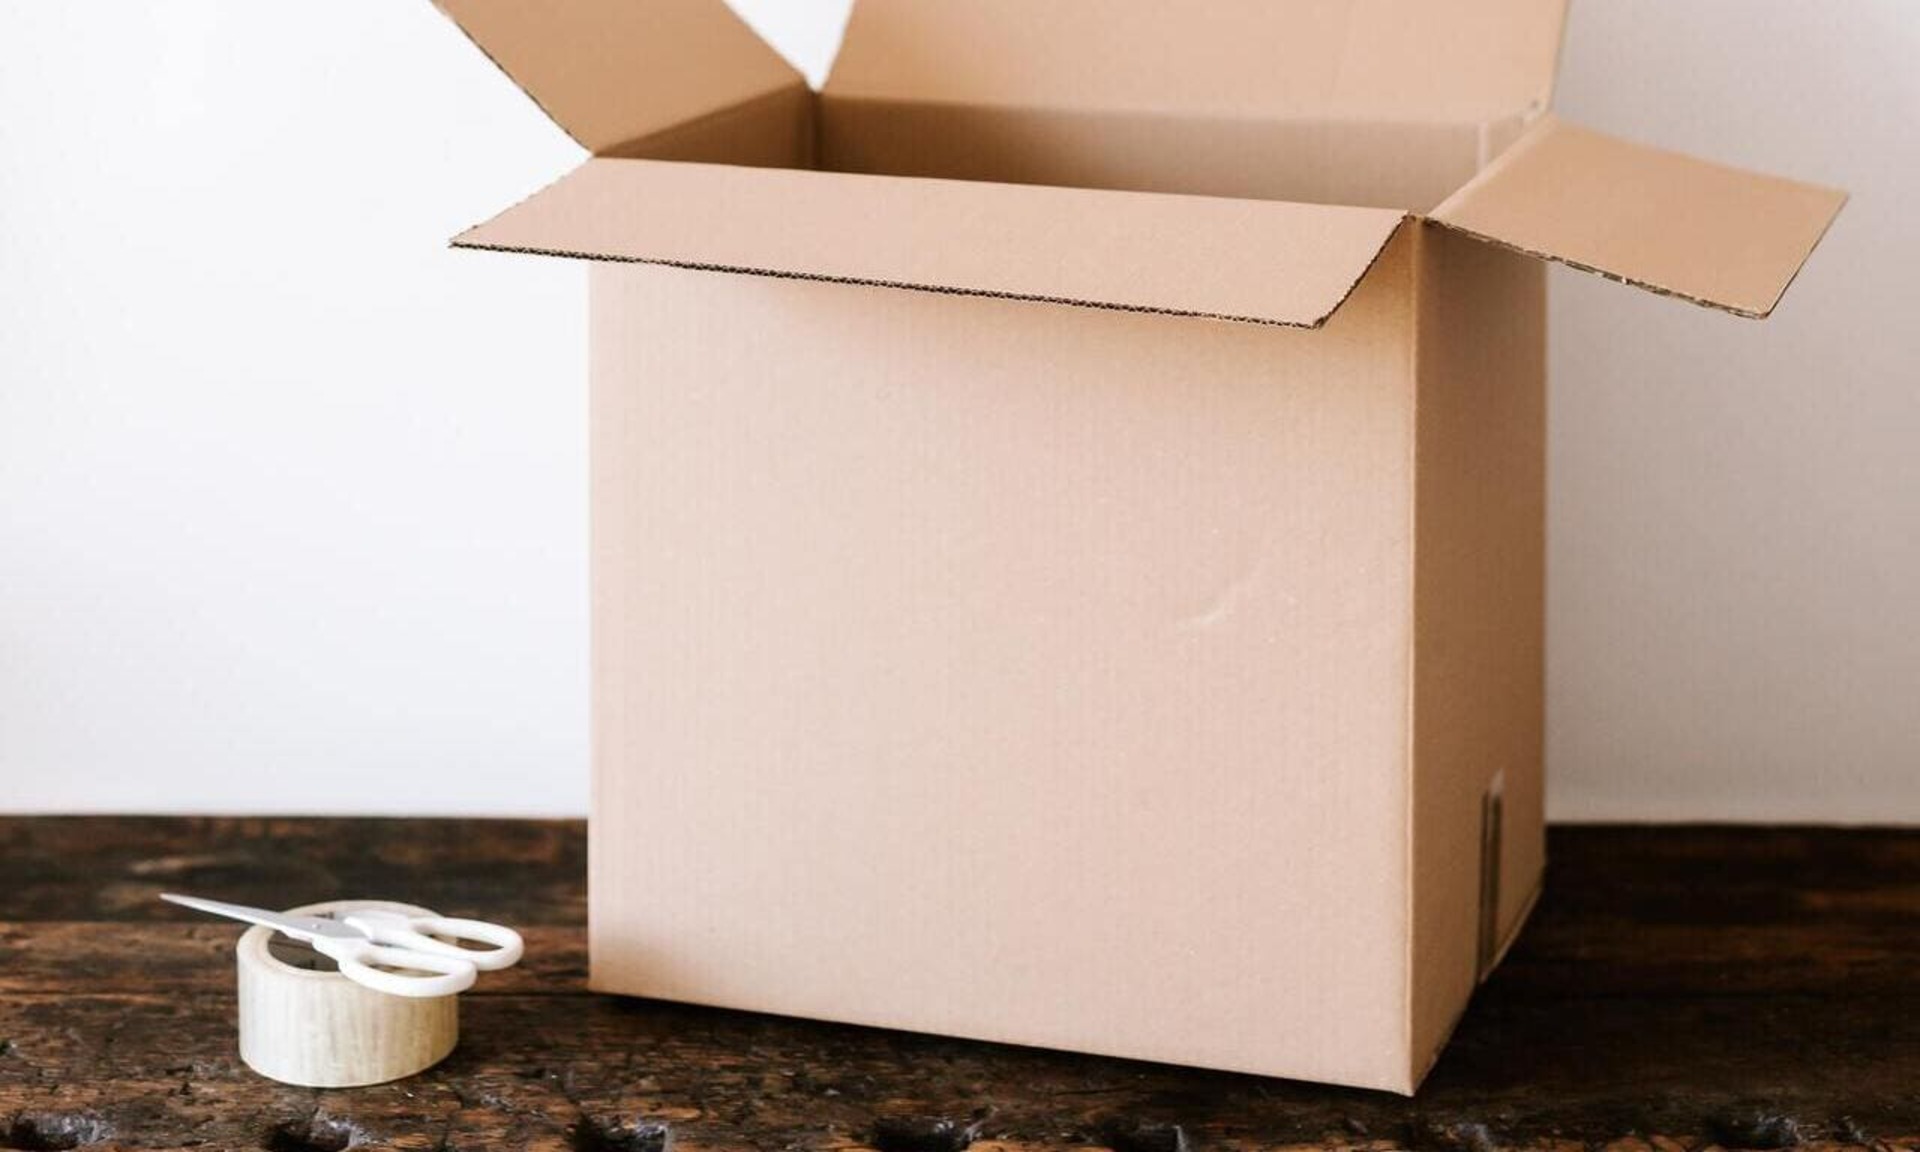 Migliori siti per acquistare scatole e imballaggi